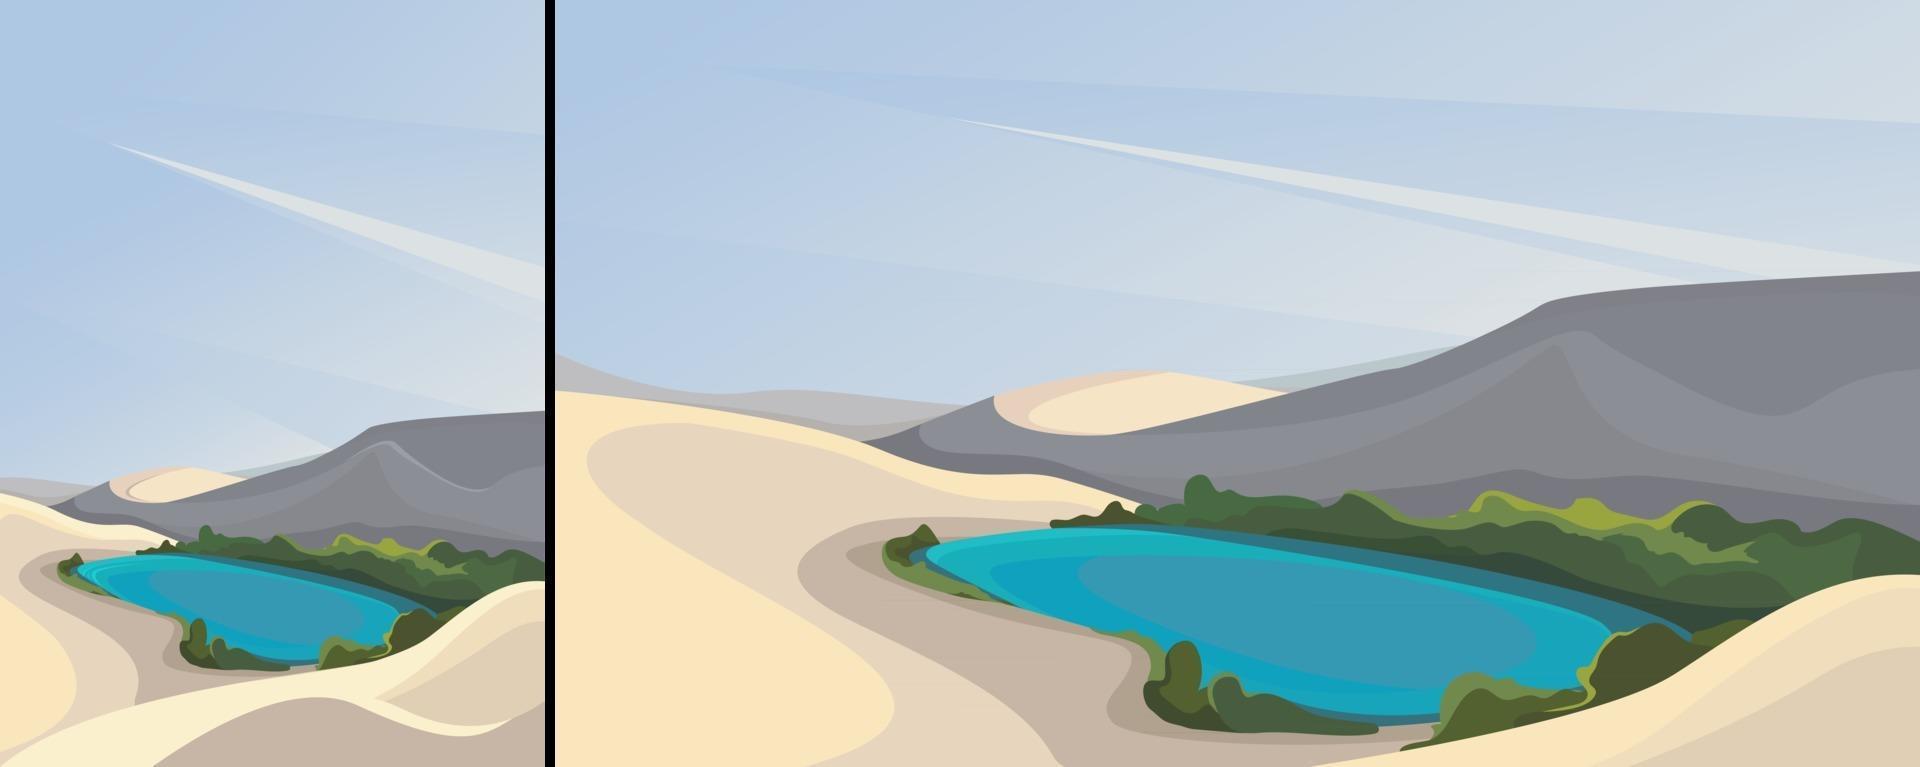 paysage avec désert et petit lac en orientation verticale et horizontale vecteur